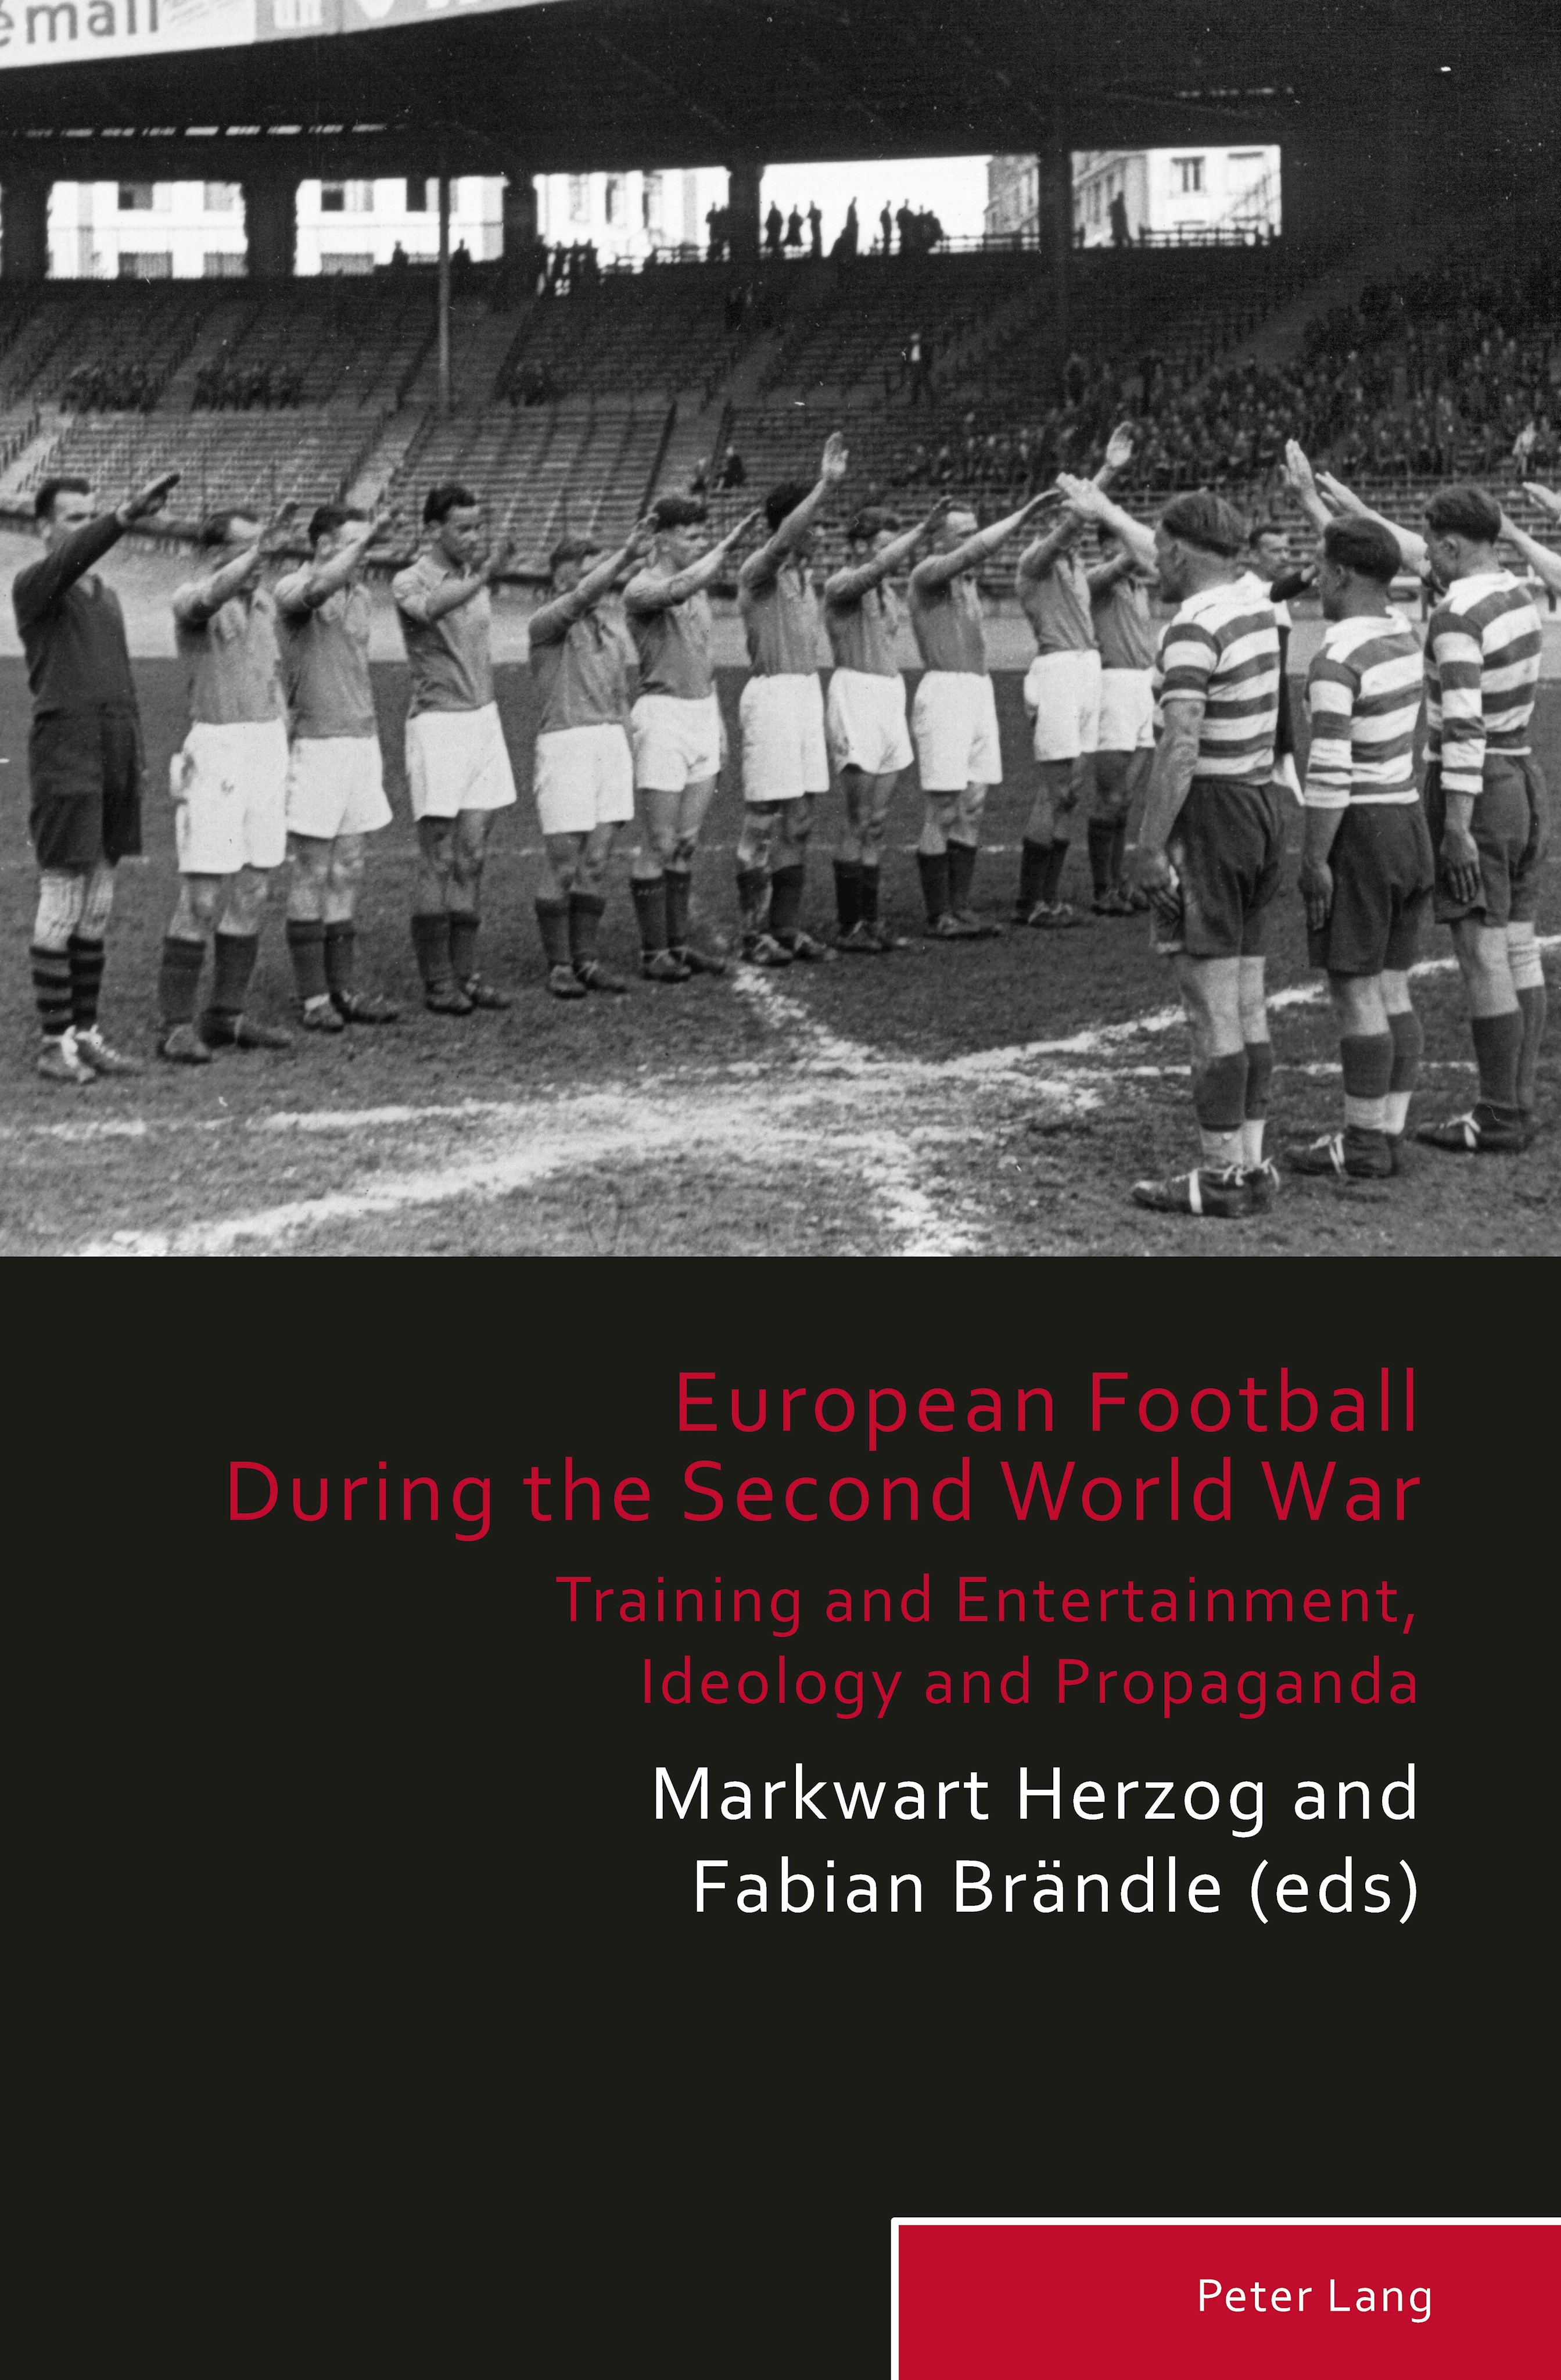 Cover des Forschungsbandes "Europäischer Fußball im Zweiten Weltkrieg" in englischer Sprache